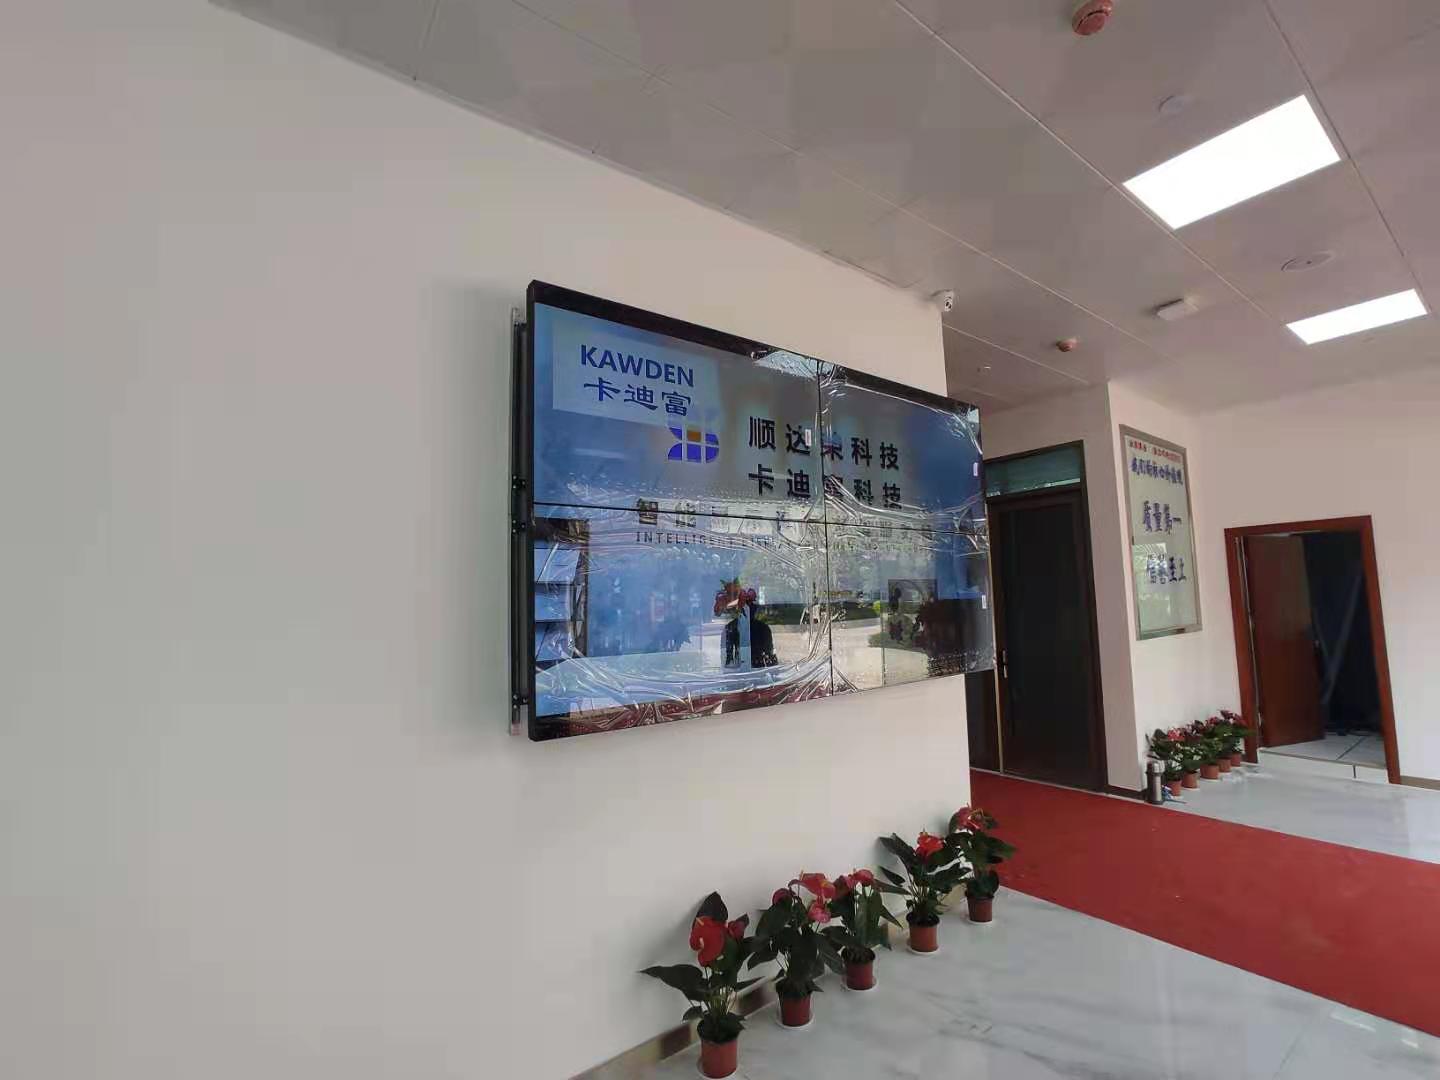 欧联设备安装工程公司展厅大屏展示